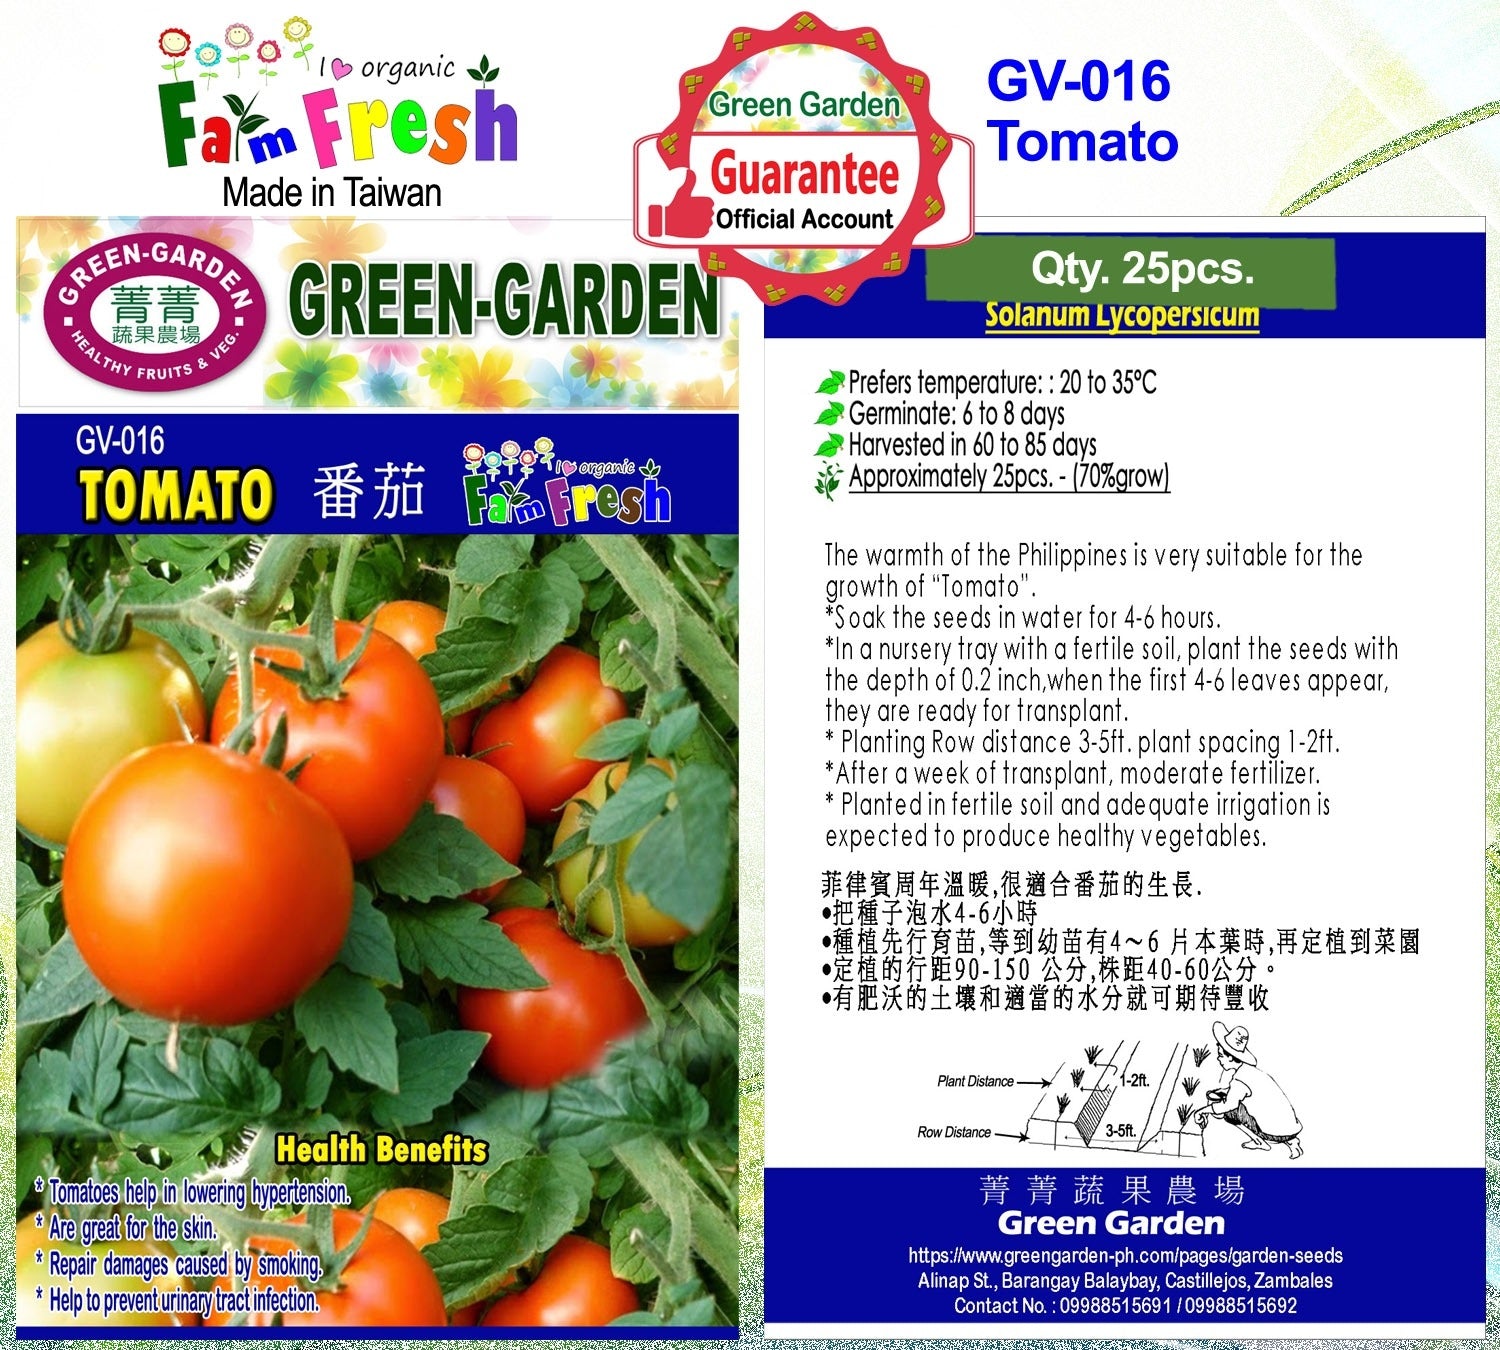 Green Garden Vegetable Seeds (GV-016 Tomato)